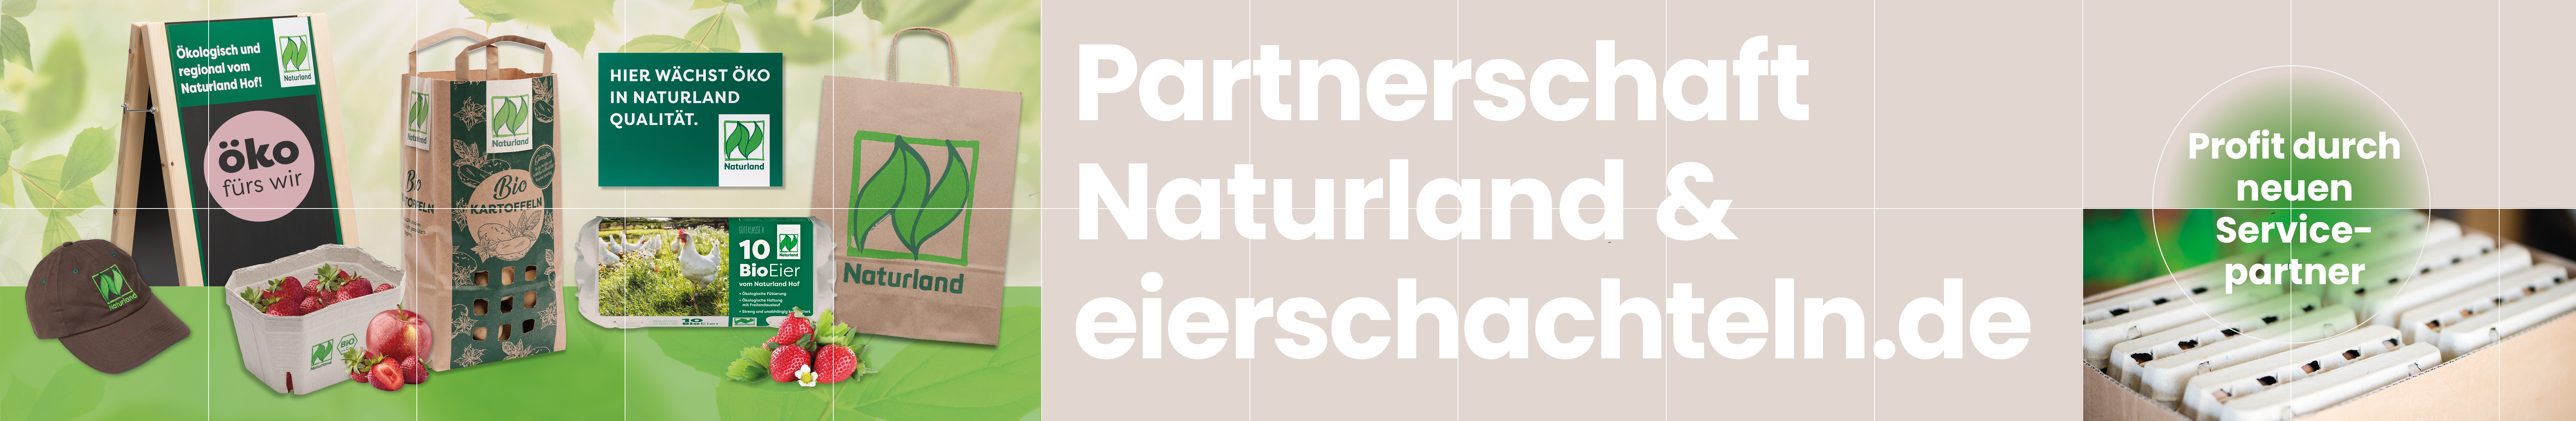 Blogbanner Naturland und eierschachteln.de besiegeln Partnerschaft